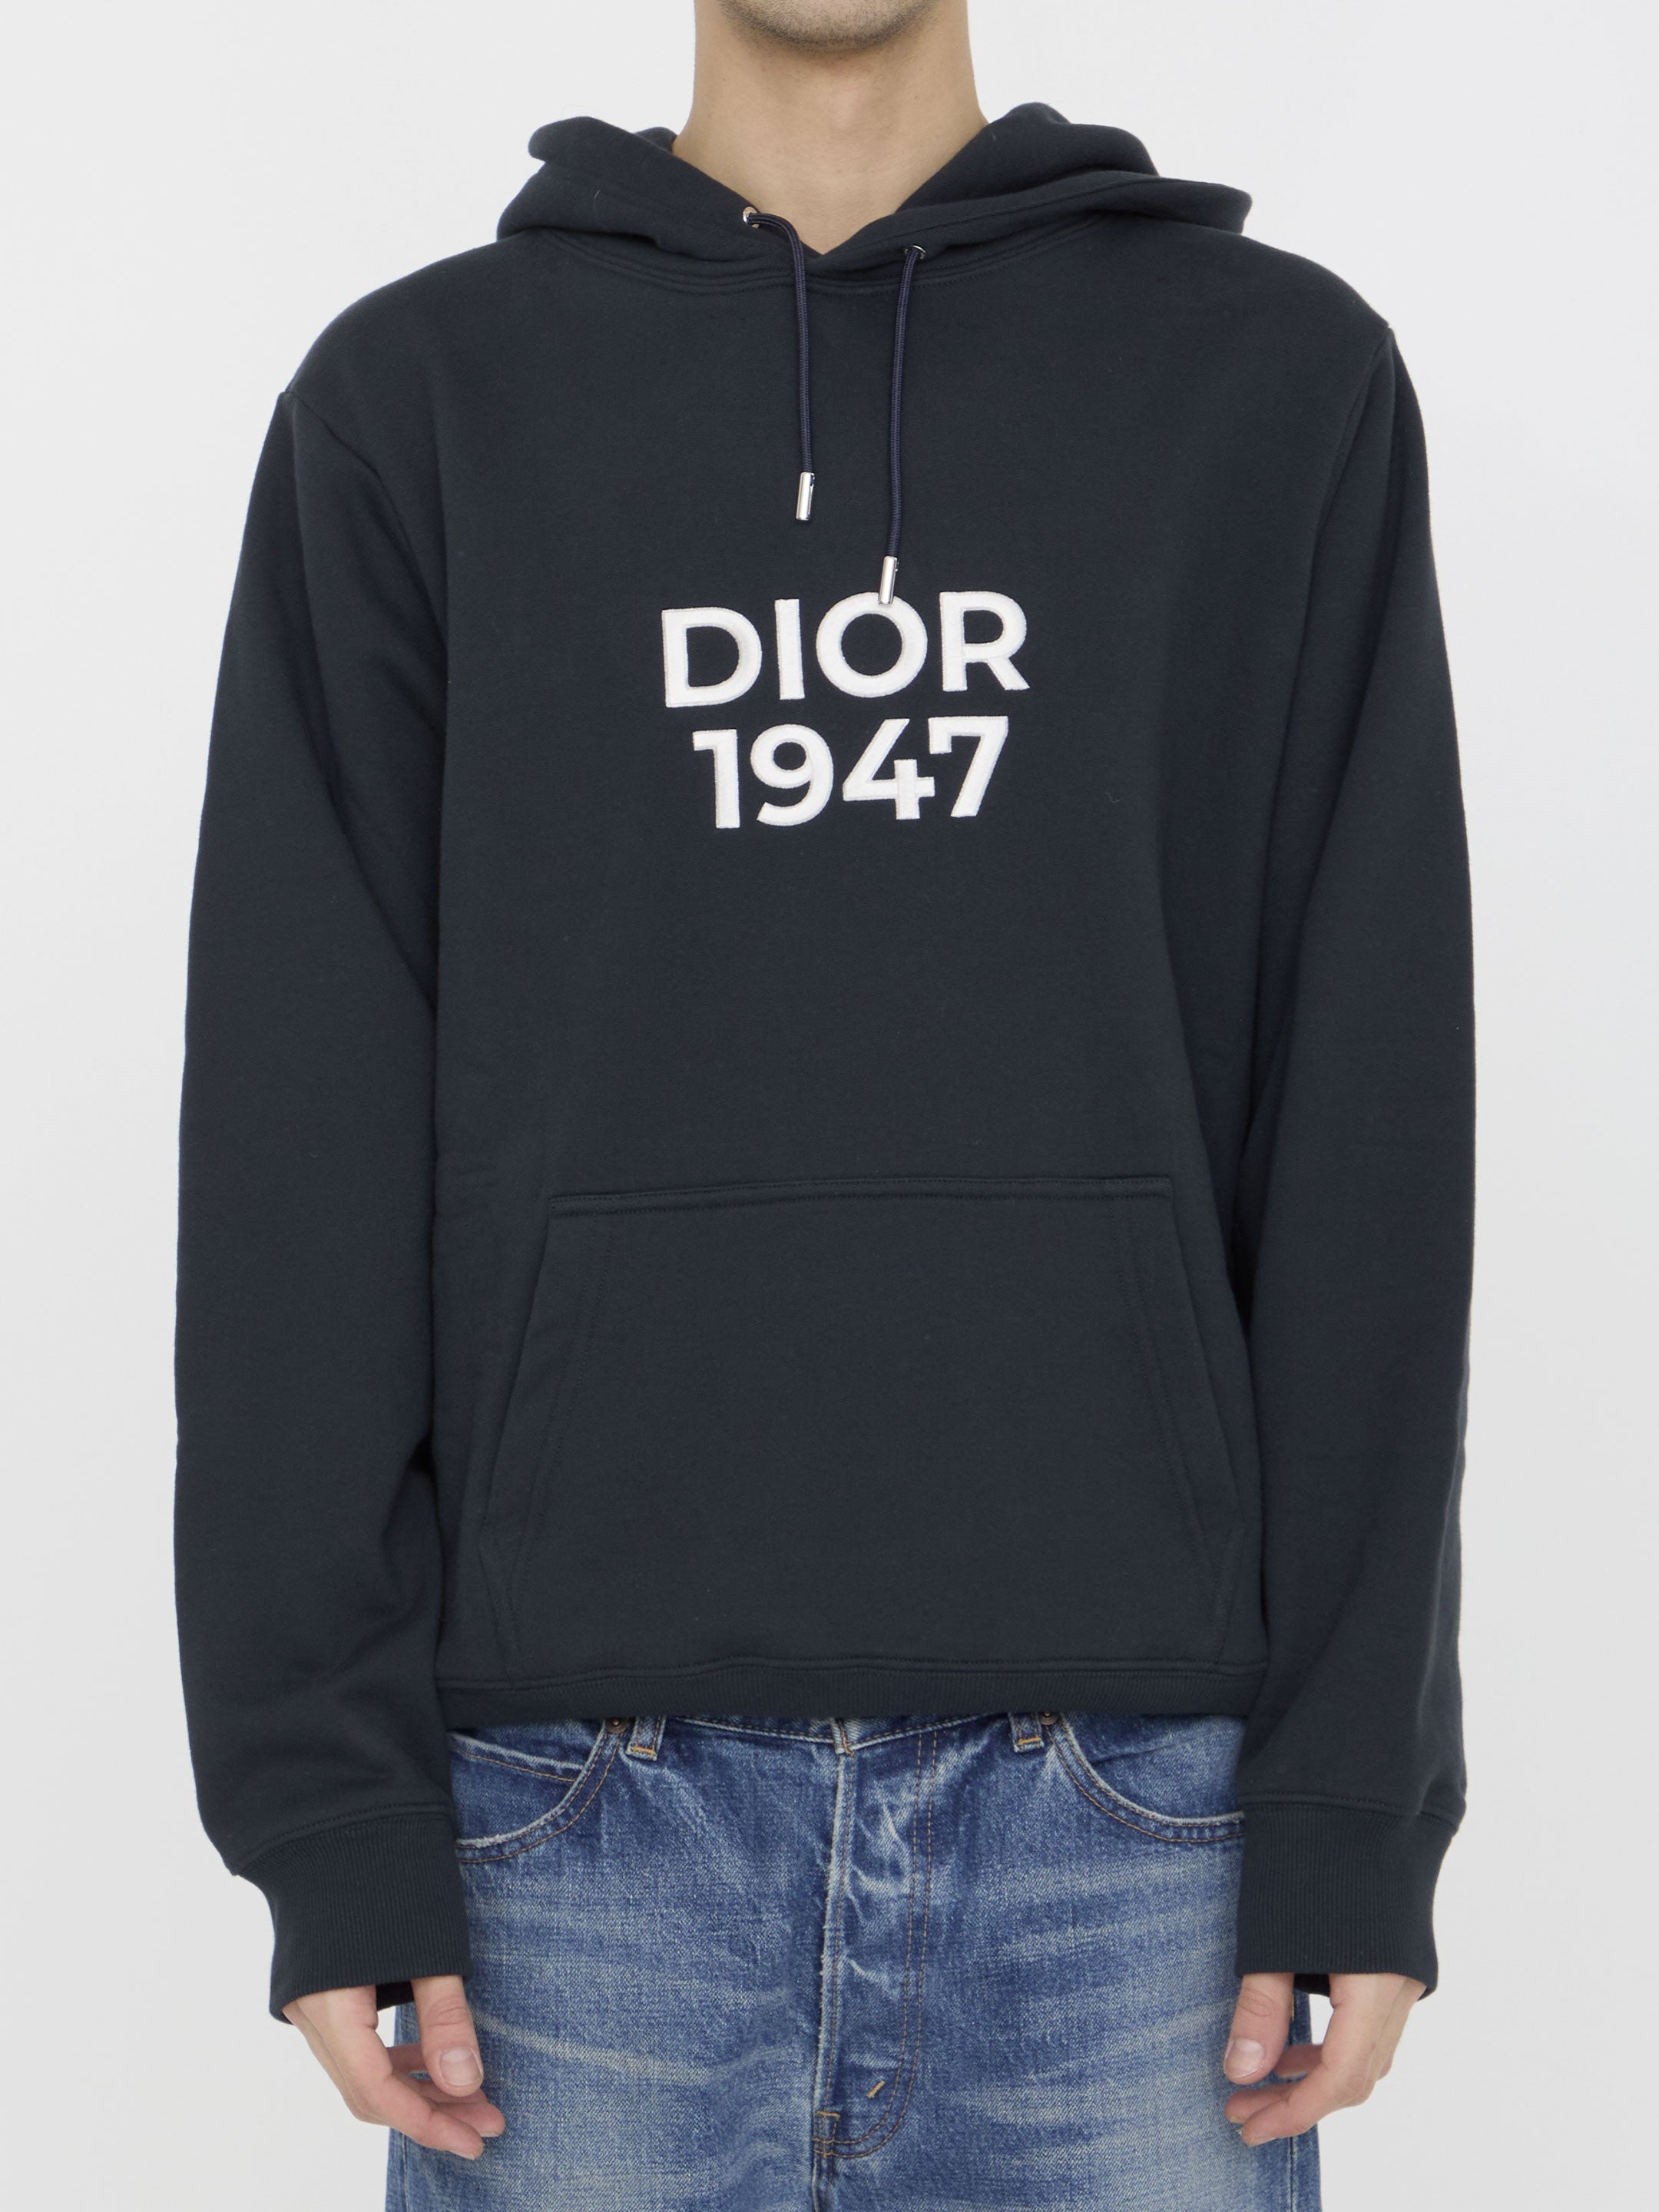 Dior 1947 hoodie